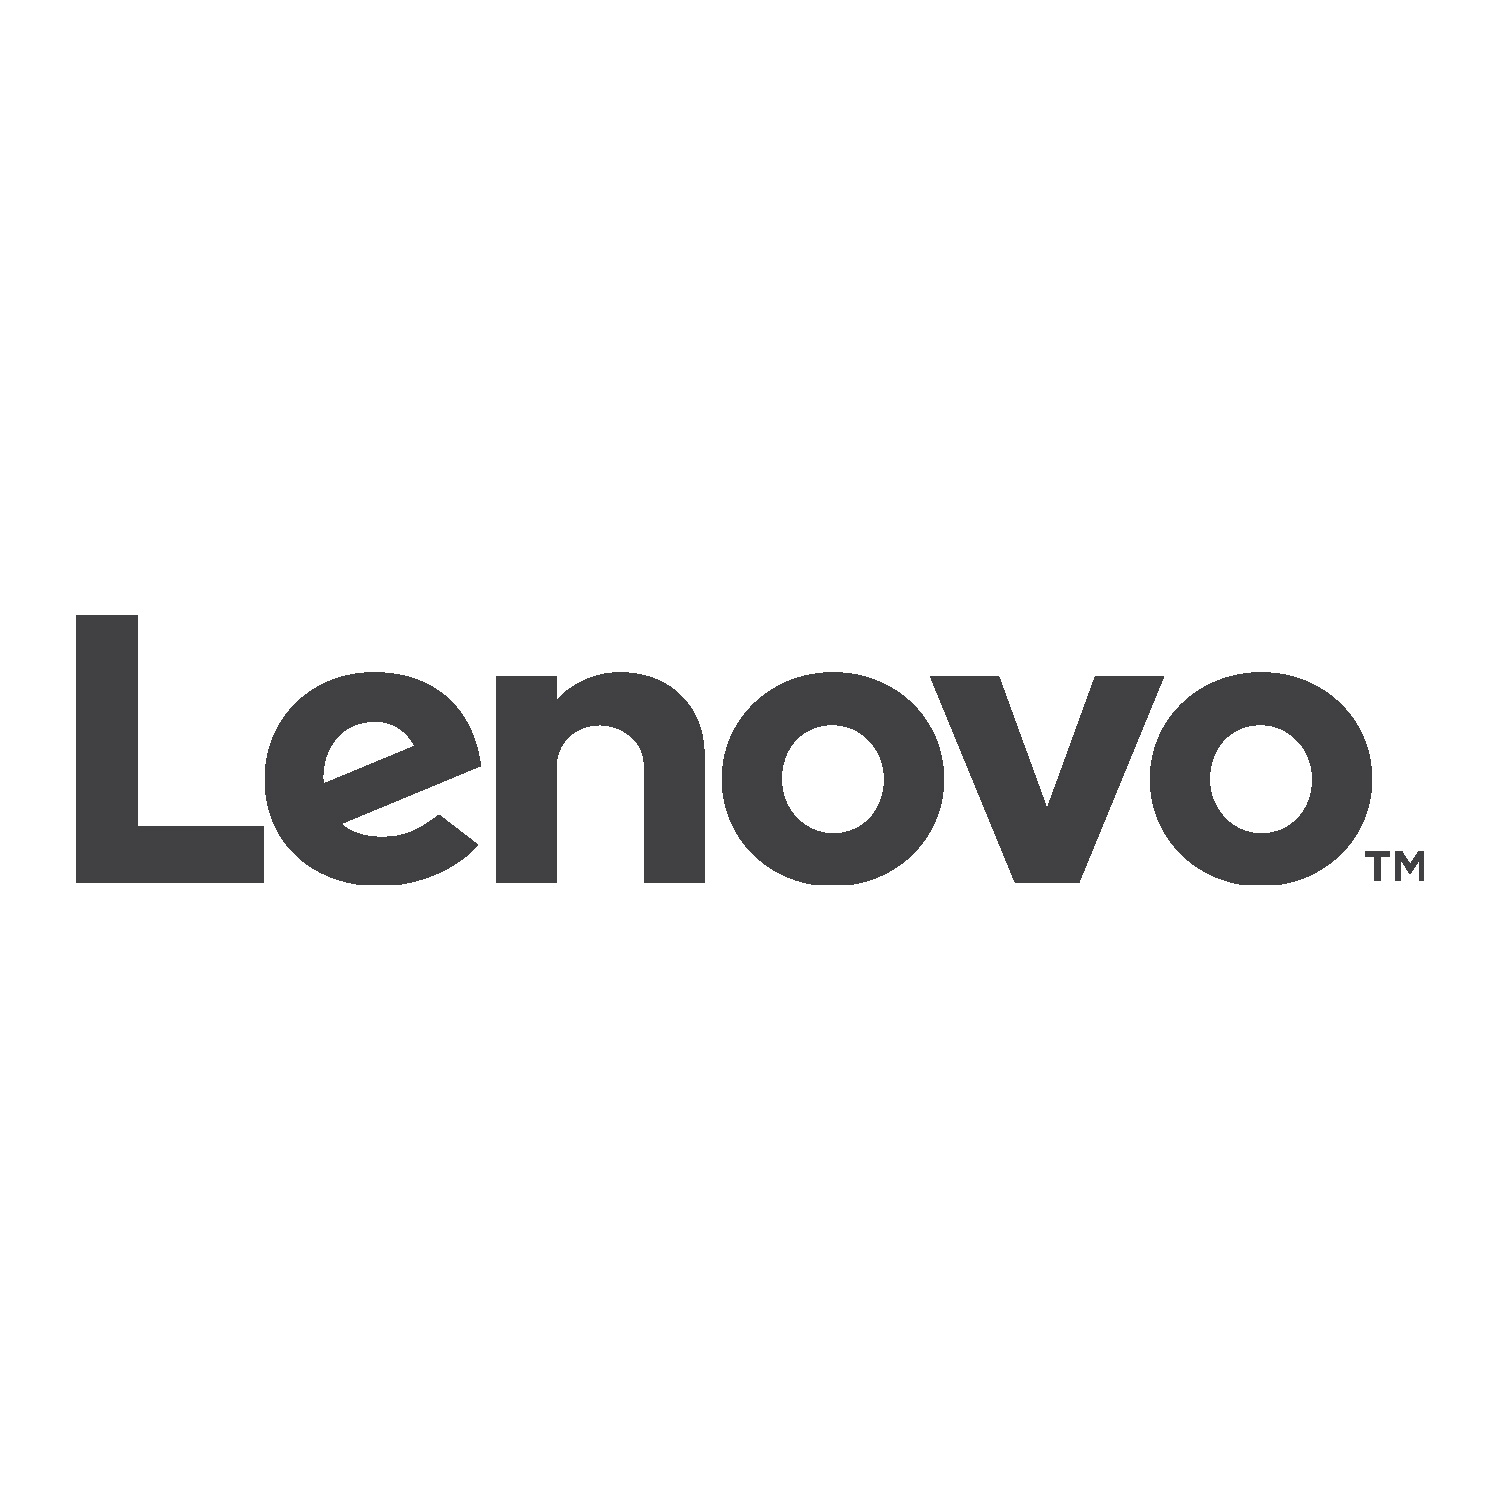 Lenovo_Logo_NEW.jpg